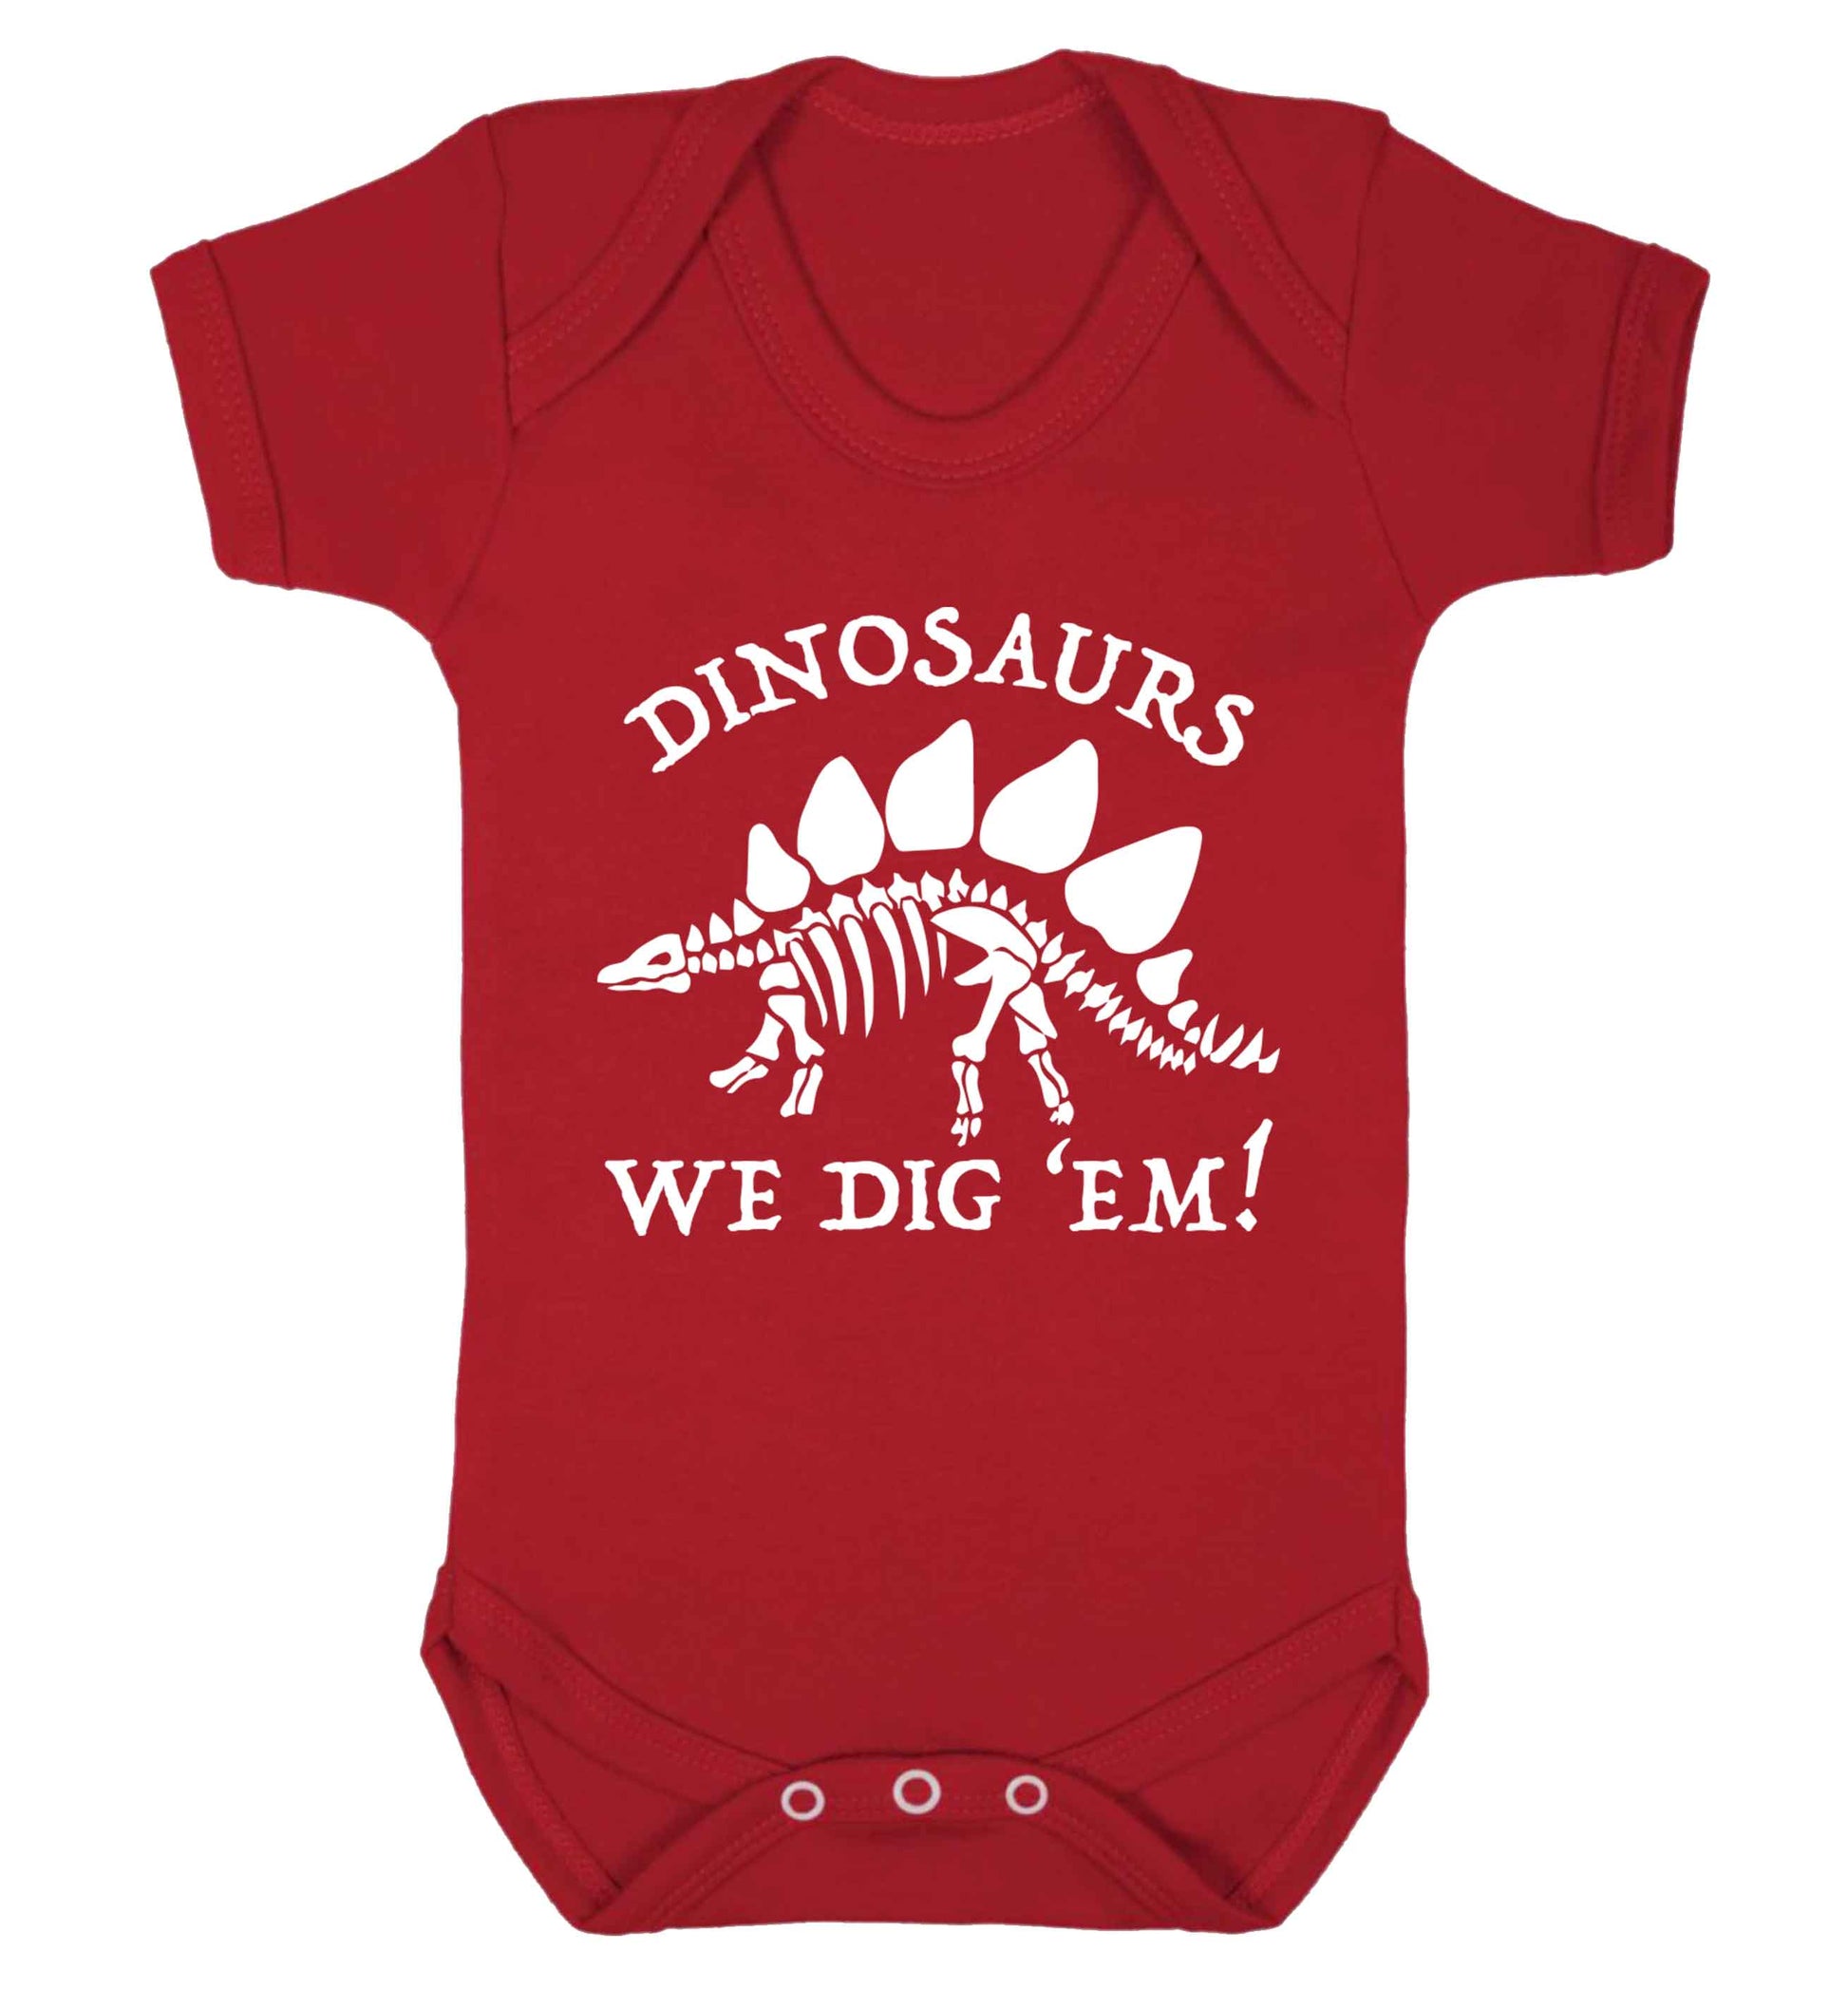 Dinosaurs we dig 'em! Baby Vest red 18-24 months